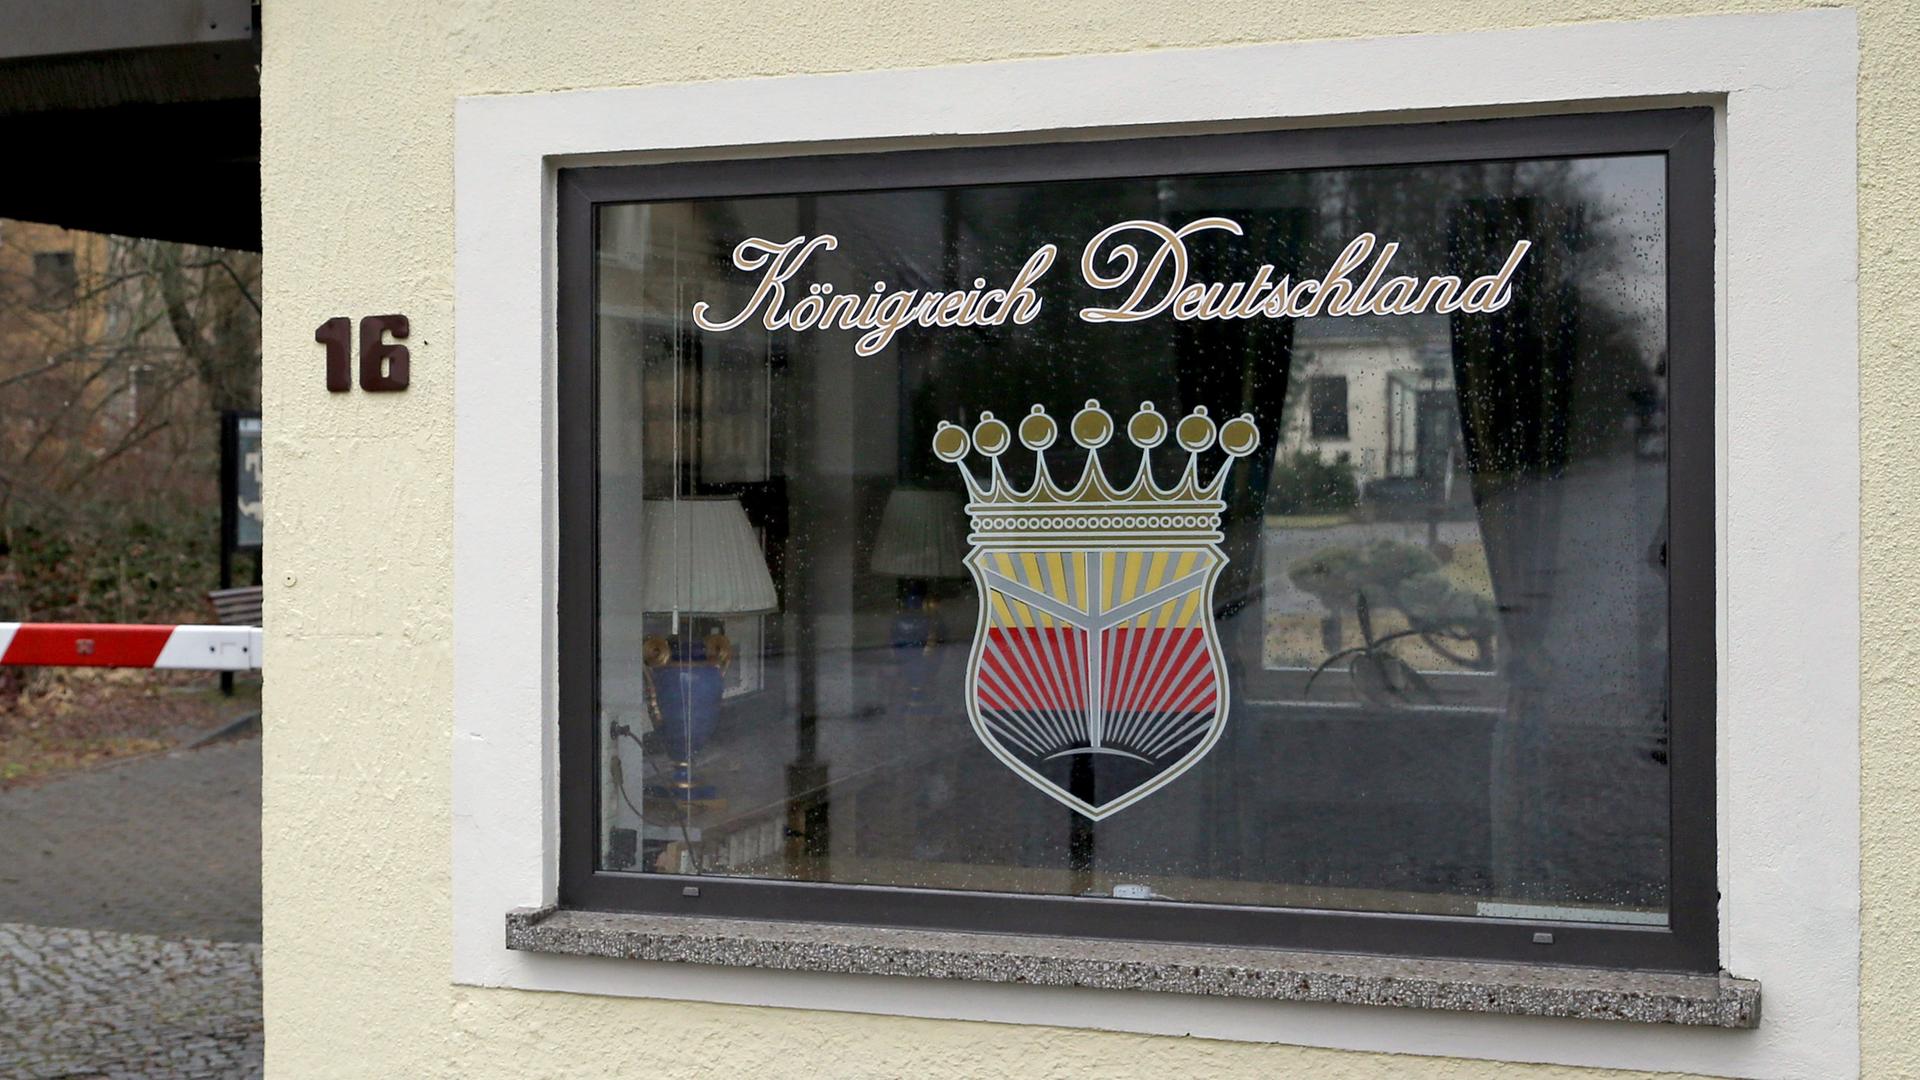 Das Logo des "Königreich Deutschland" prangt am 23.02.2017 am Fenster eines Pförtnerhauses in Lutherstadt Wittenberg (Sachsen-Anhalt). Auf dem gut neun Hektar großen Gelände eines ehemaligen Krankenhauses hatte der selbst ernannte "König von Deutschland" vor einigen Jahren sein Königreich ausgerufen. 